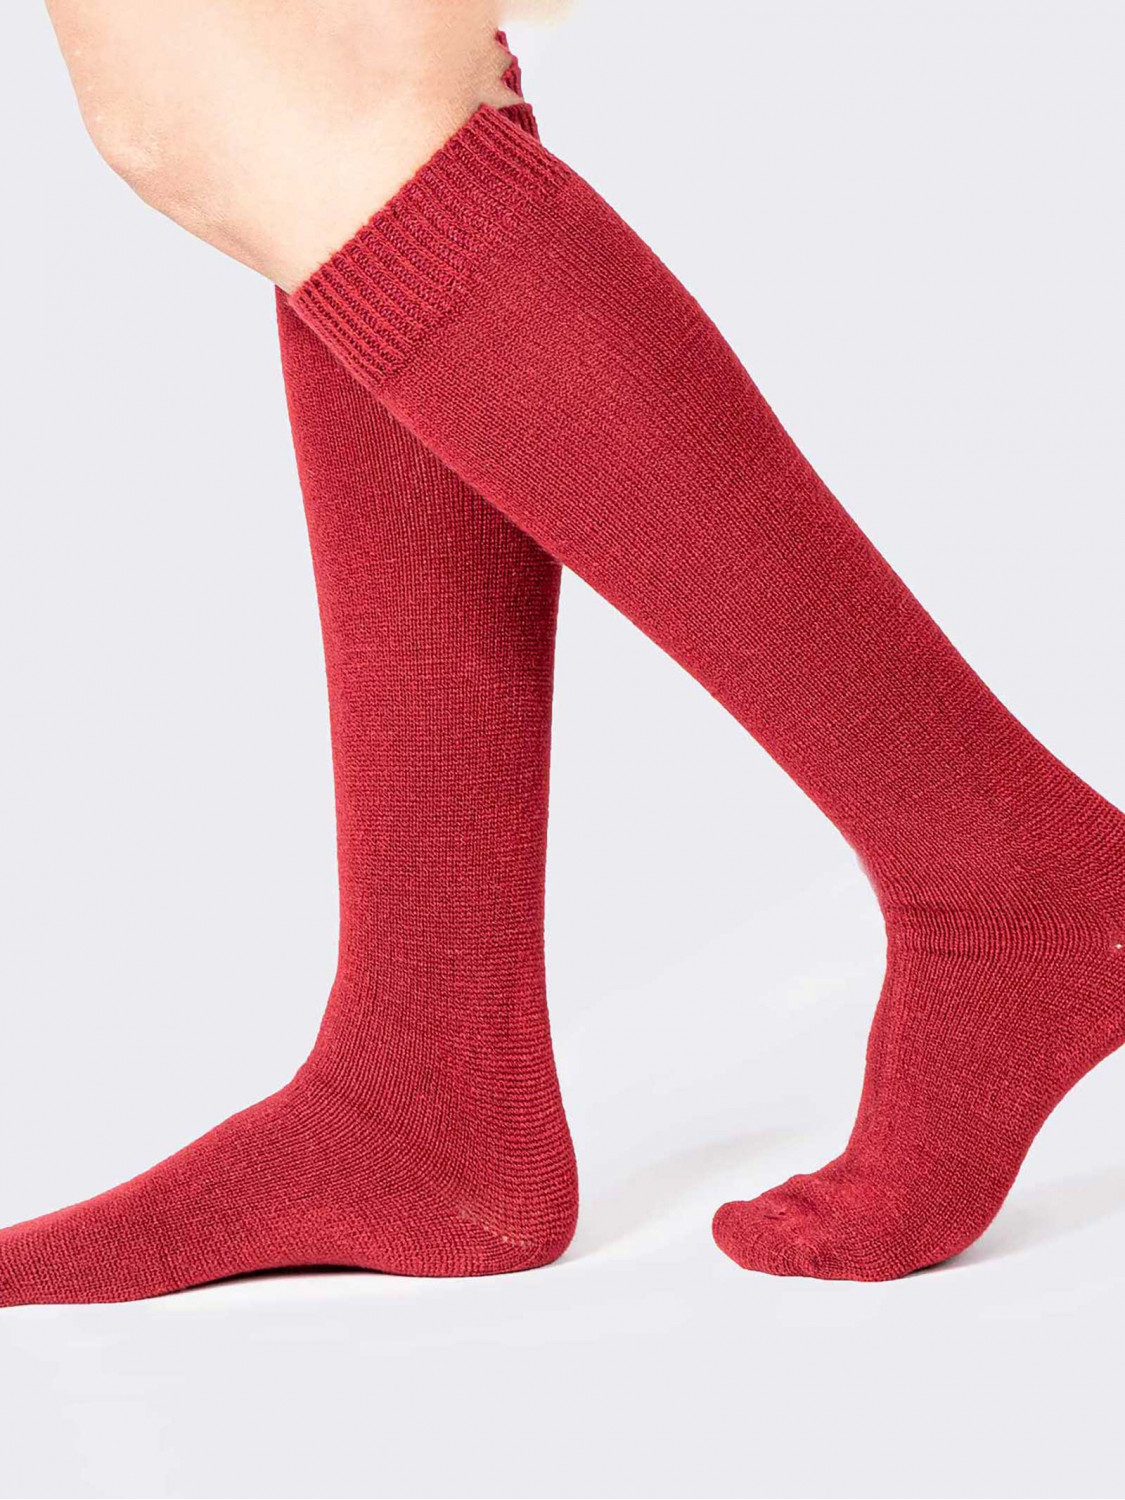 Geschmeidig weiche lange Socken - Made in Italy